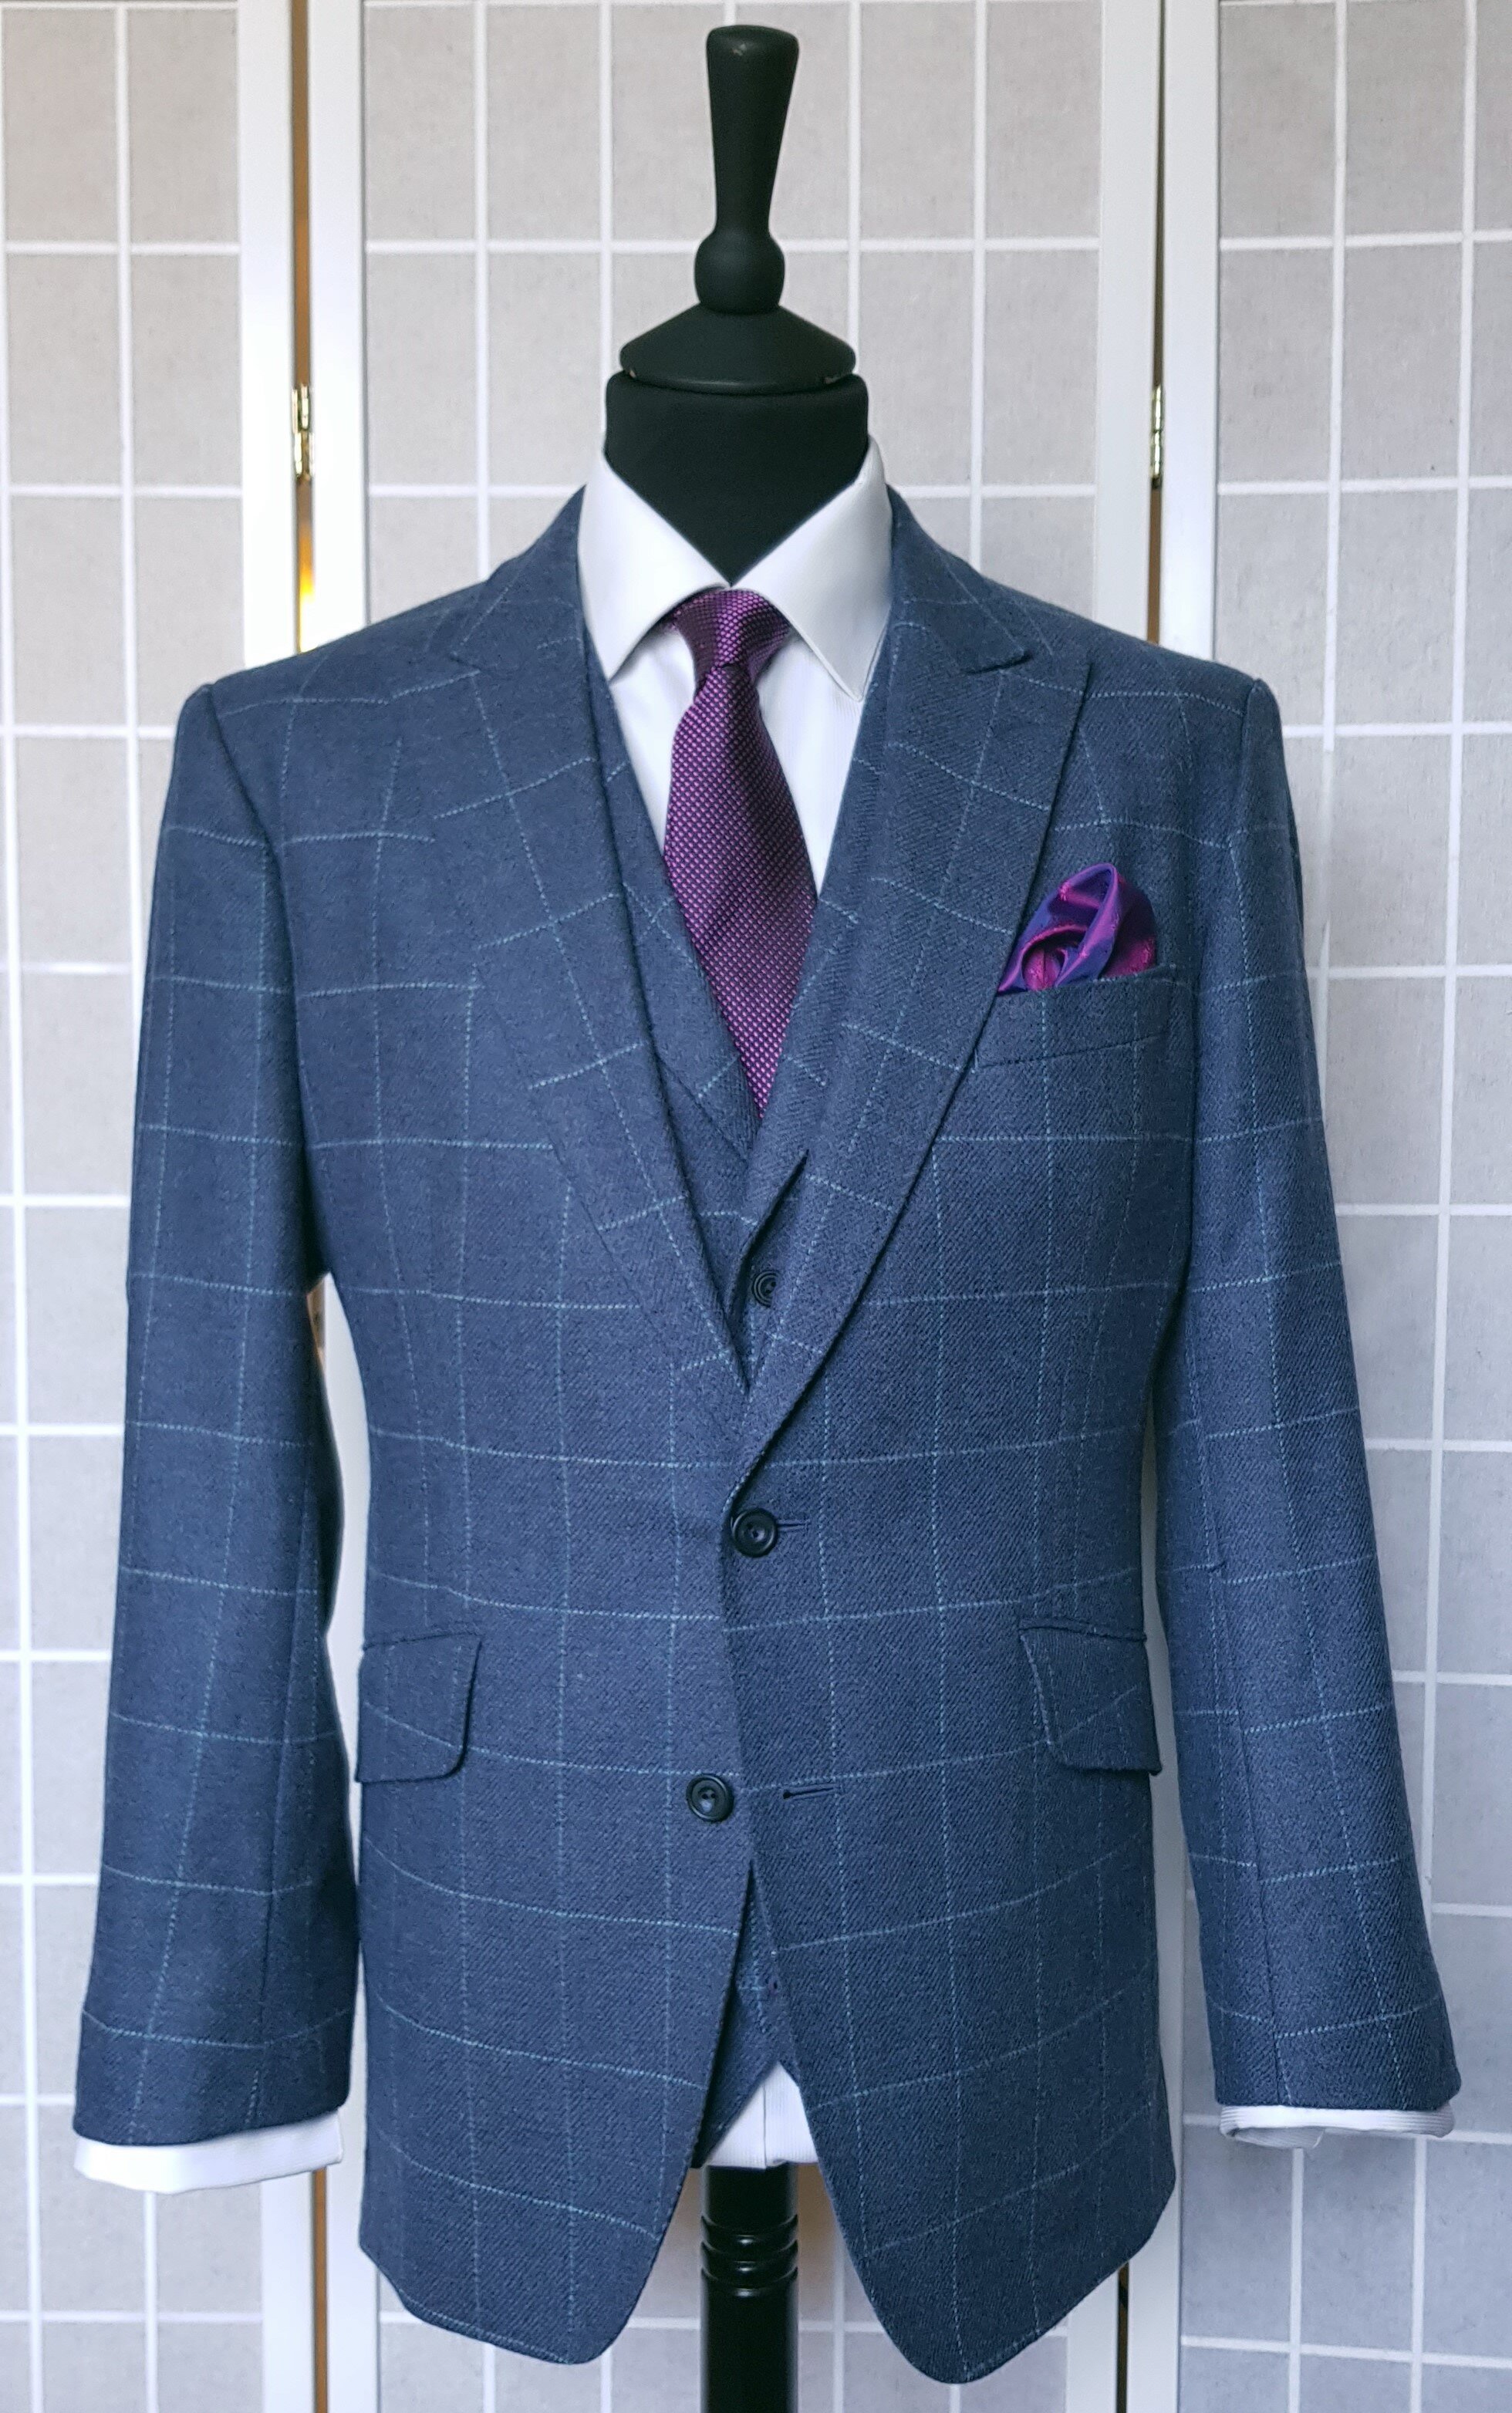 3 Piece suit in Blue Check Tweed (10).jpg